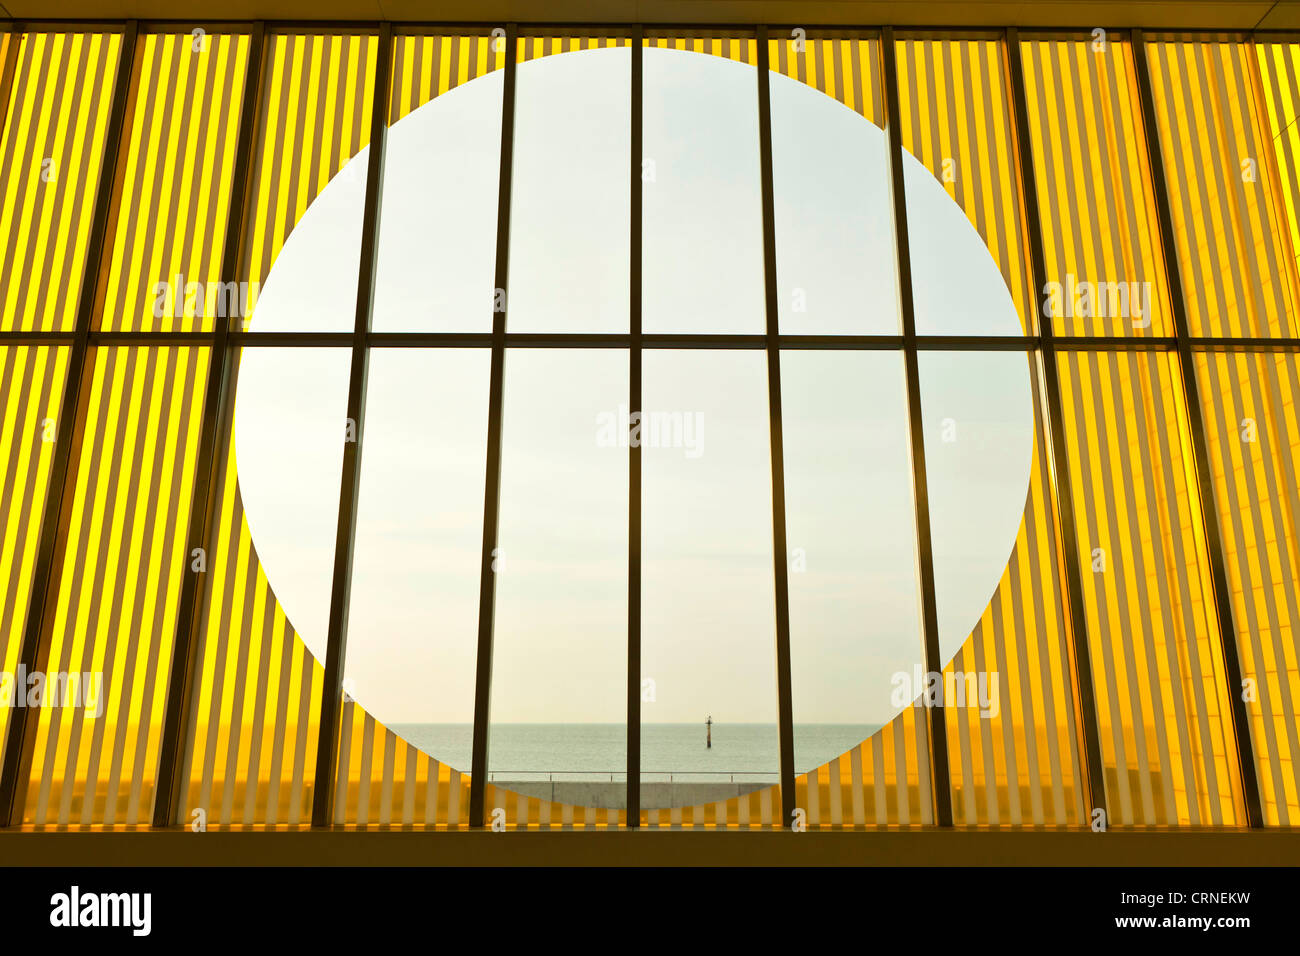 Una vista a través del cristal de la pantalla interior Turner Contemporary Gallery en Margate. Foto de stock